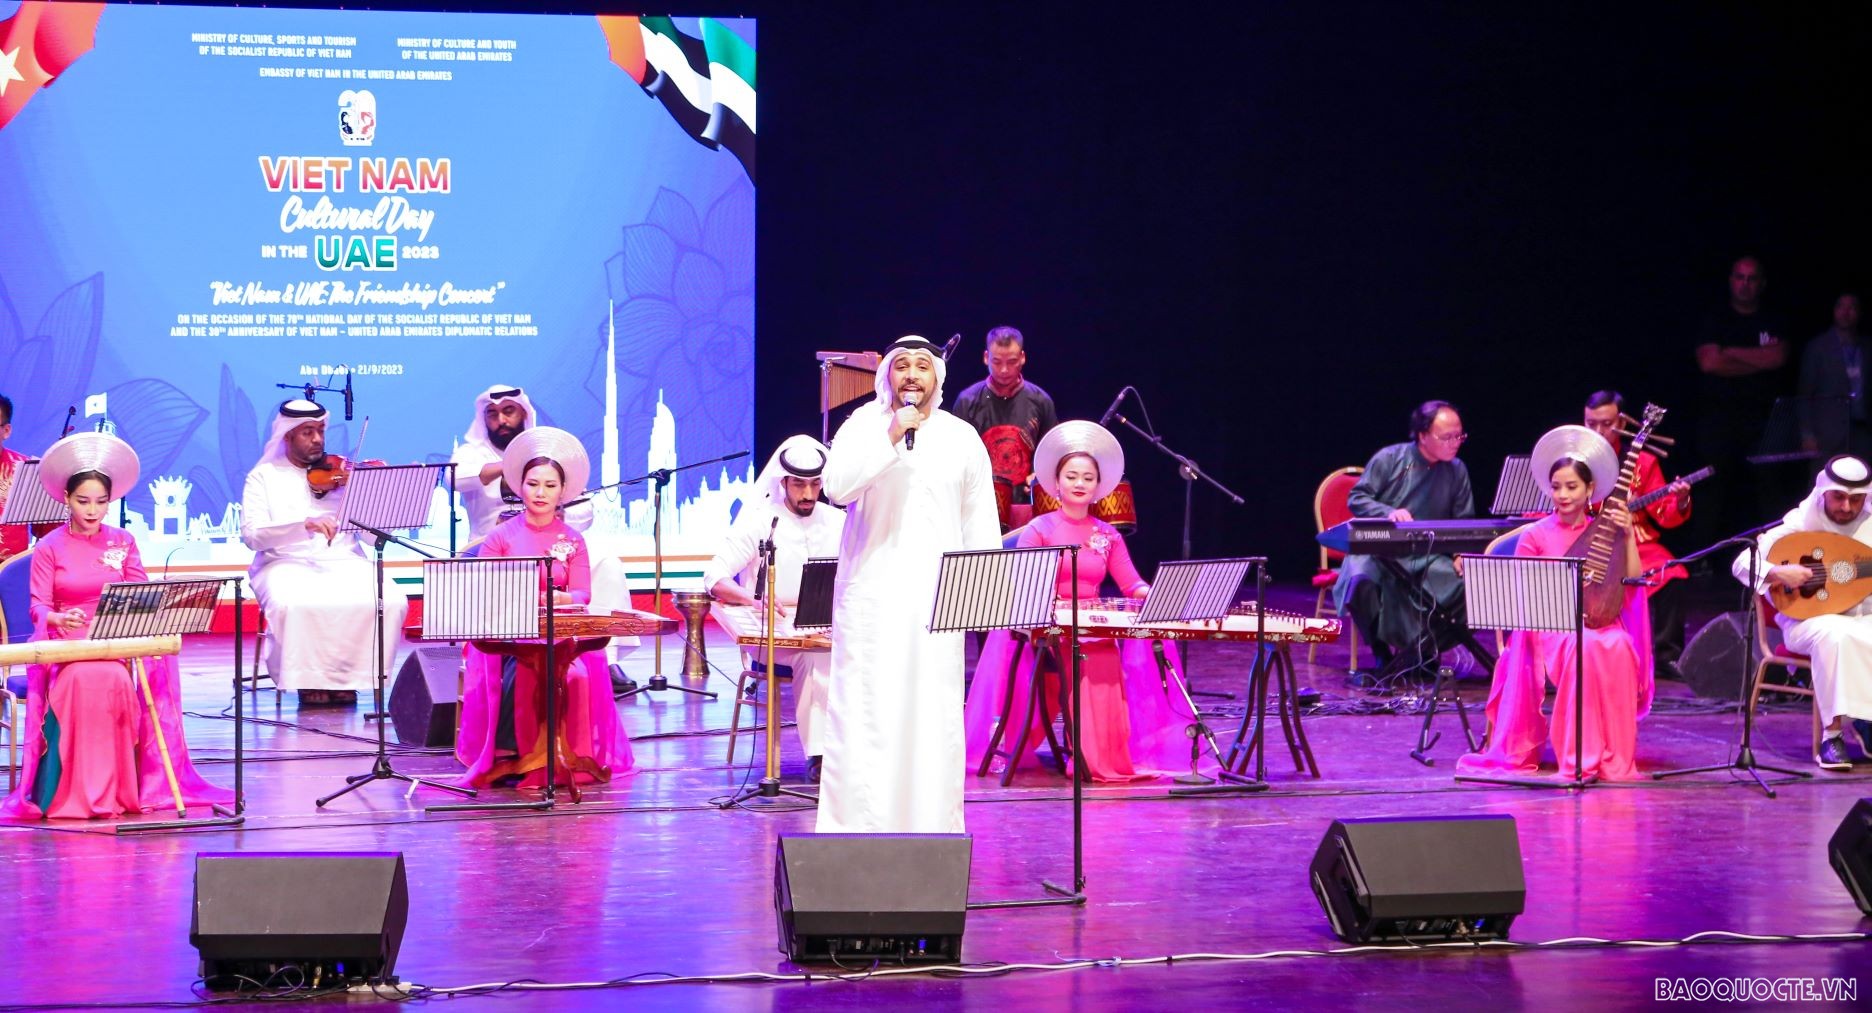 Hơn 500 đại biểu tham dự Lễ kỷ niệm Quốc khánh Việt Nam ở Abu Dhabi, UAE